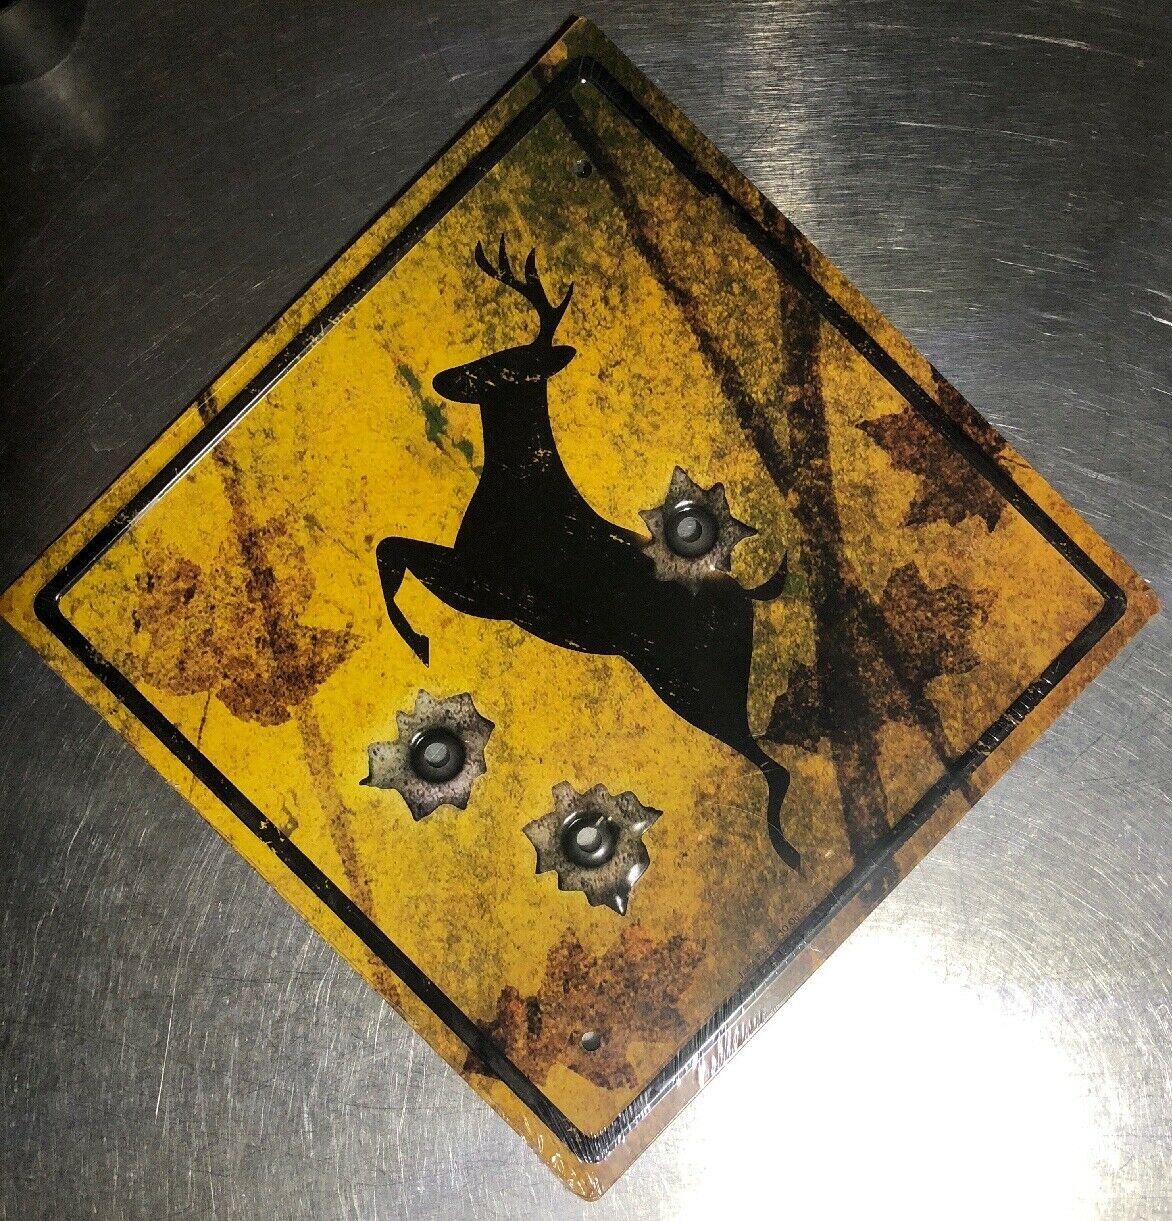 Deer Crossing: Antique style metal sign